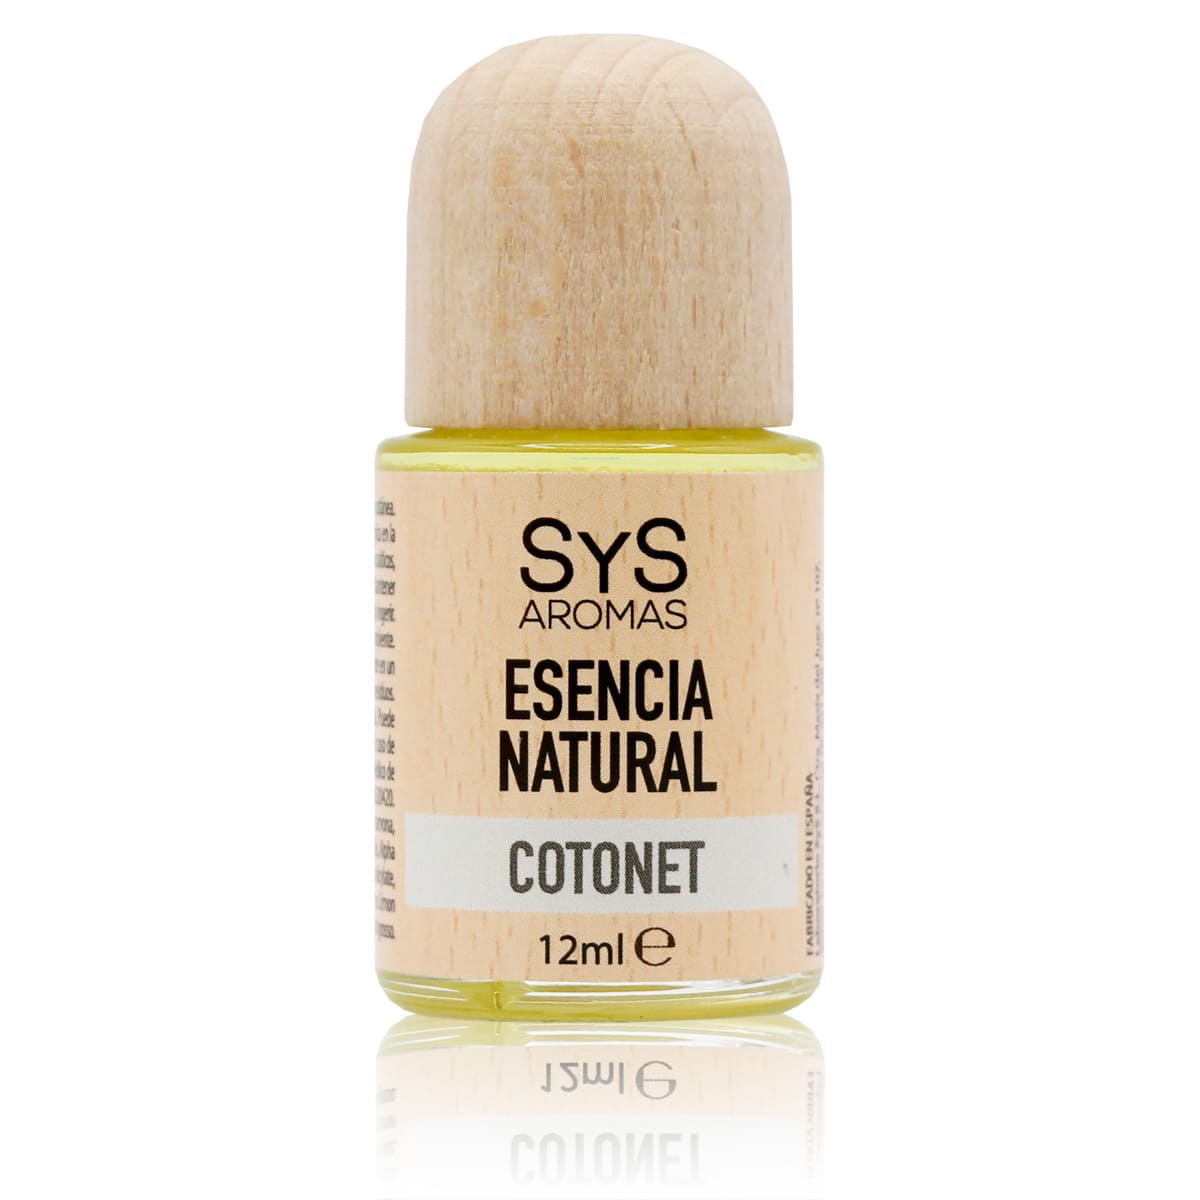 Comprar Esencia Cotonet 12ml SYS Aromas